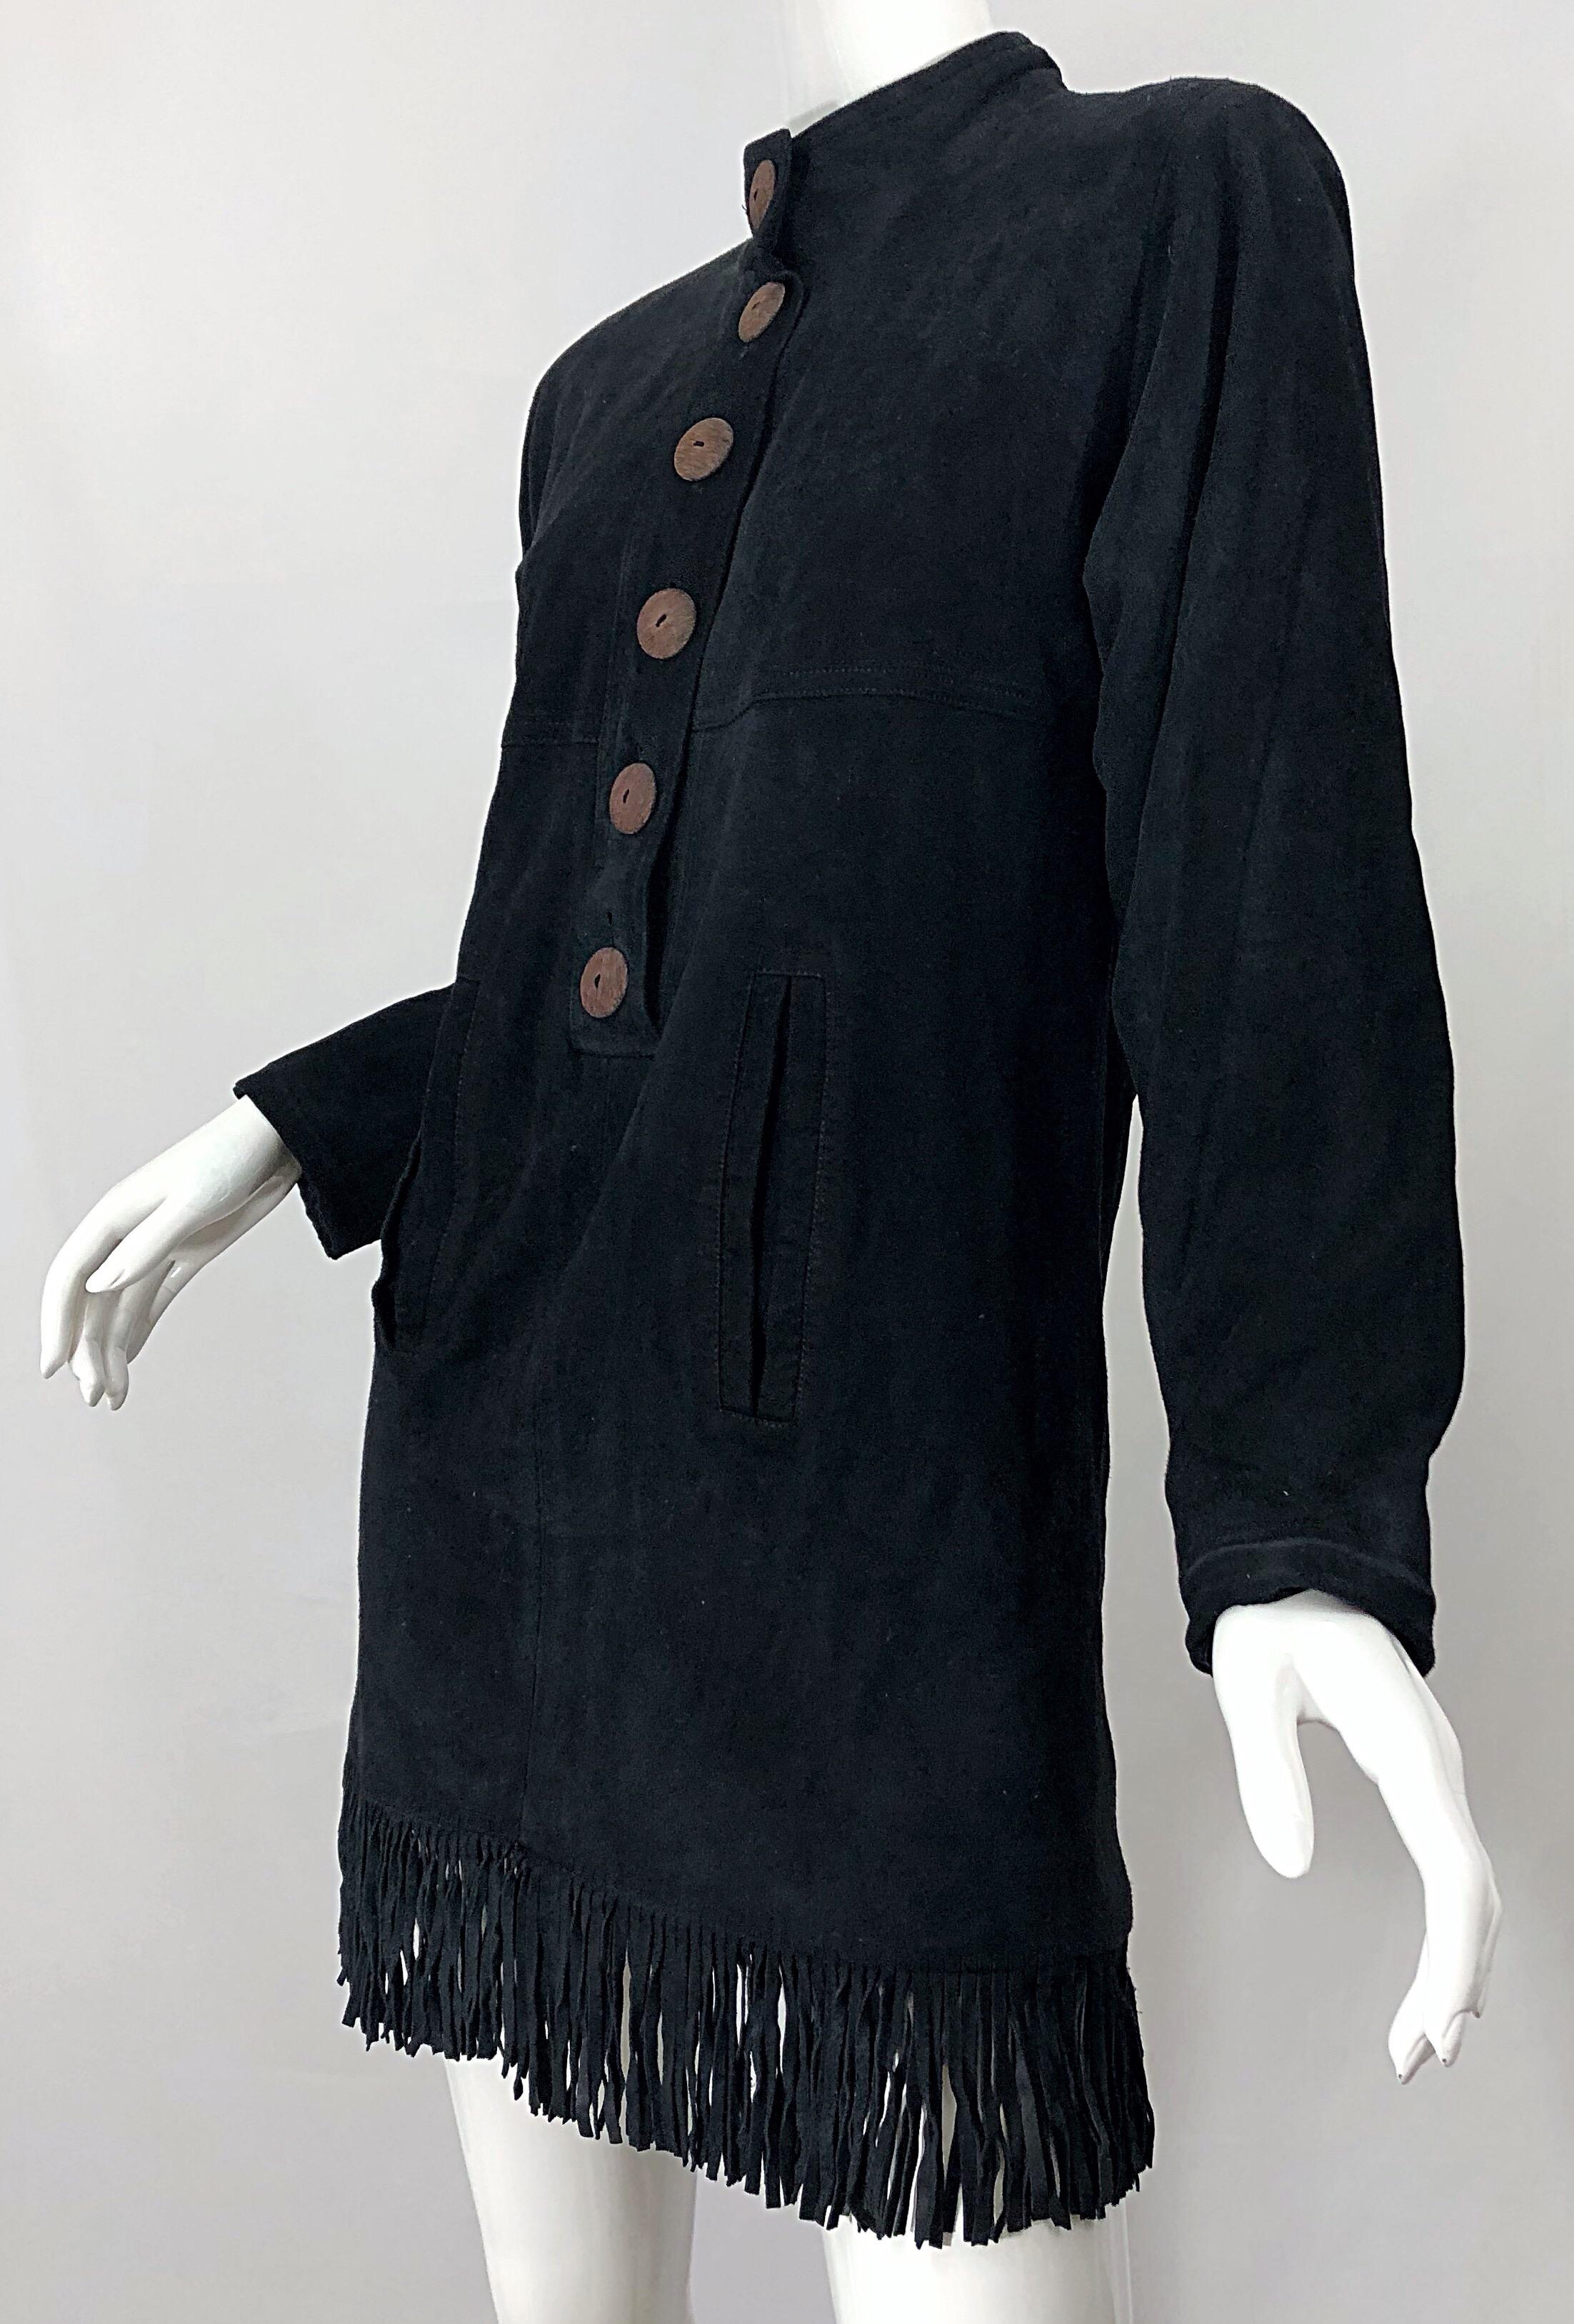 Vintage 90s Yves Saint Laurent YSL Black Suede Leather Fringe Nehru Tunic Dress For Sale 3